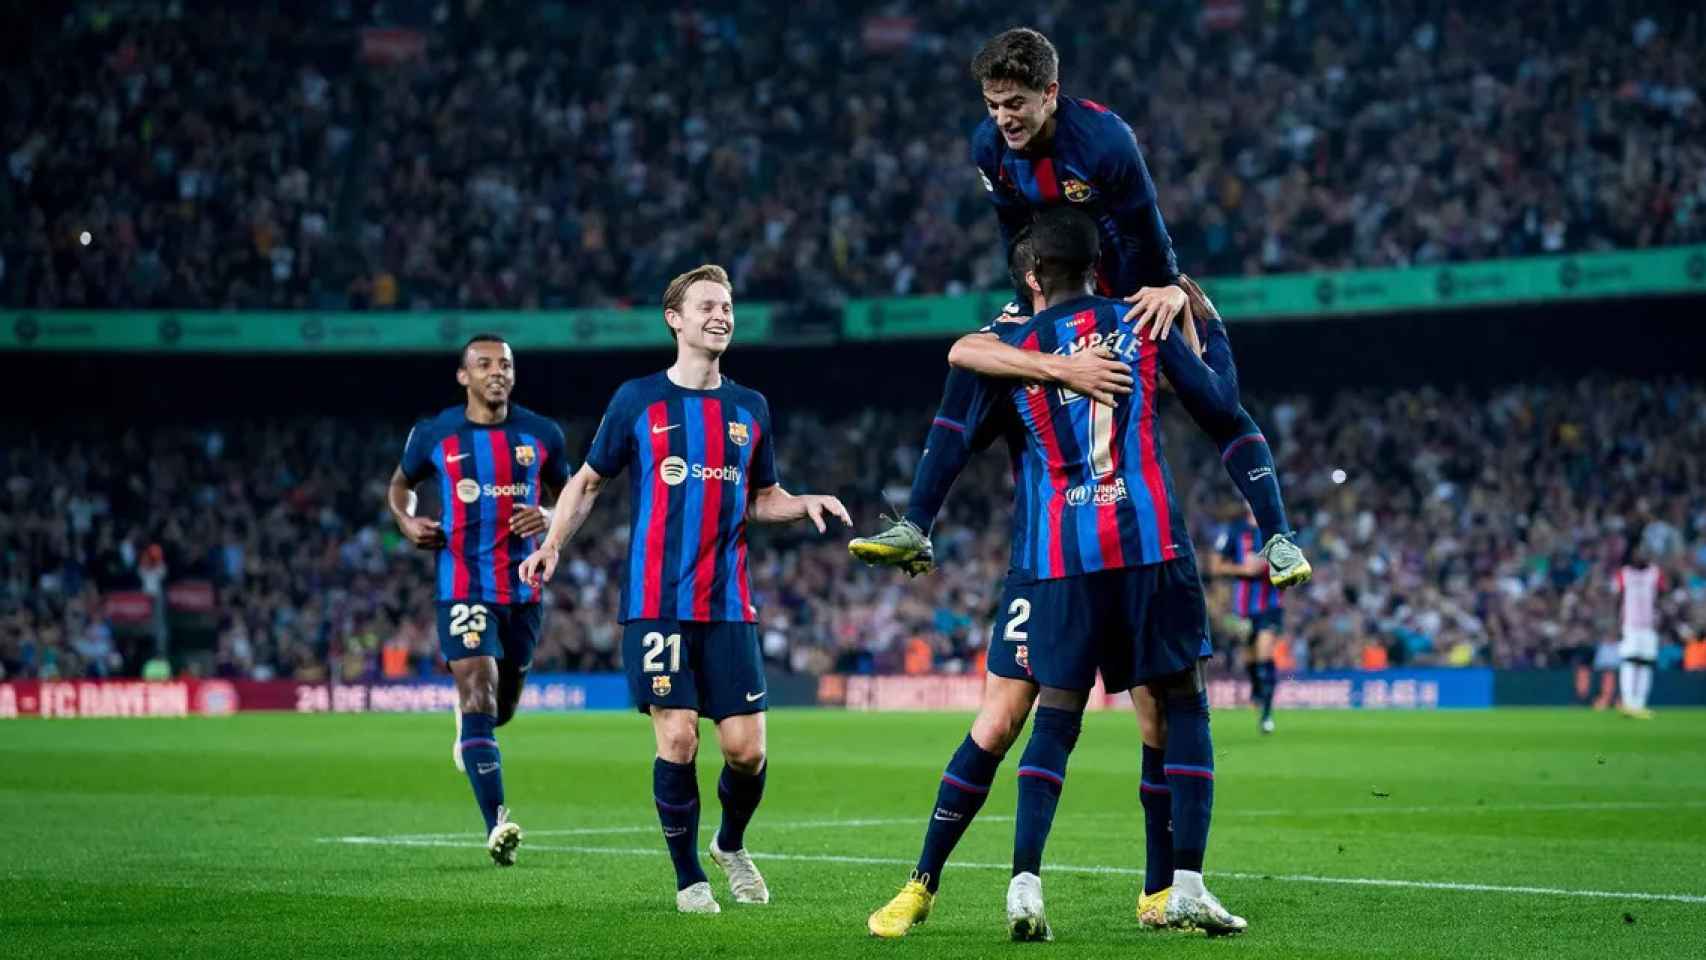 El Barça, dirigido por Xavi, festeja la goleada contra el Athletic Club en un Camp Nou con más de 84.000 aficionados / FCB